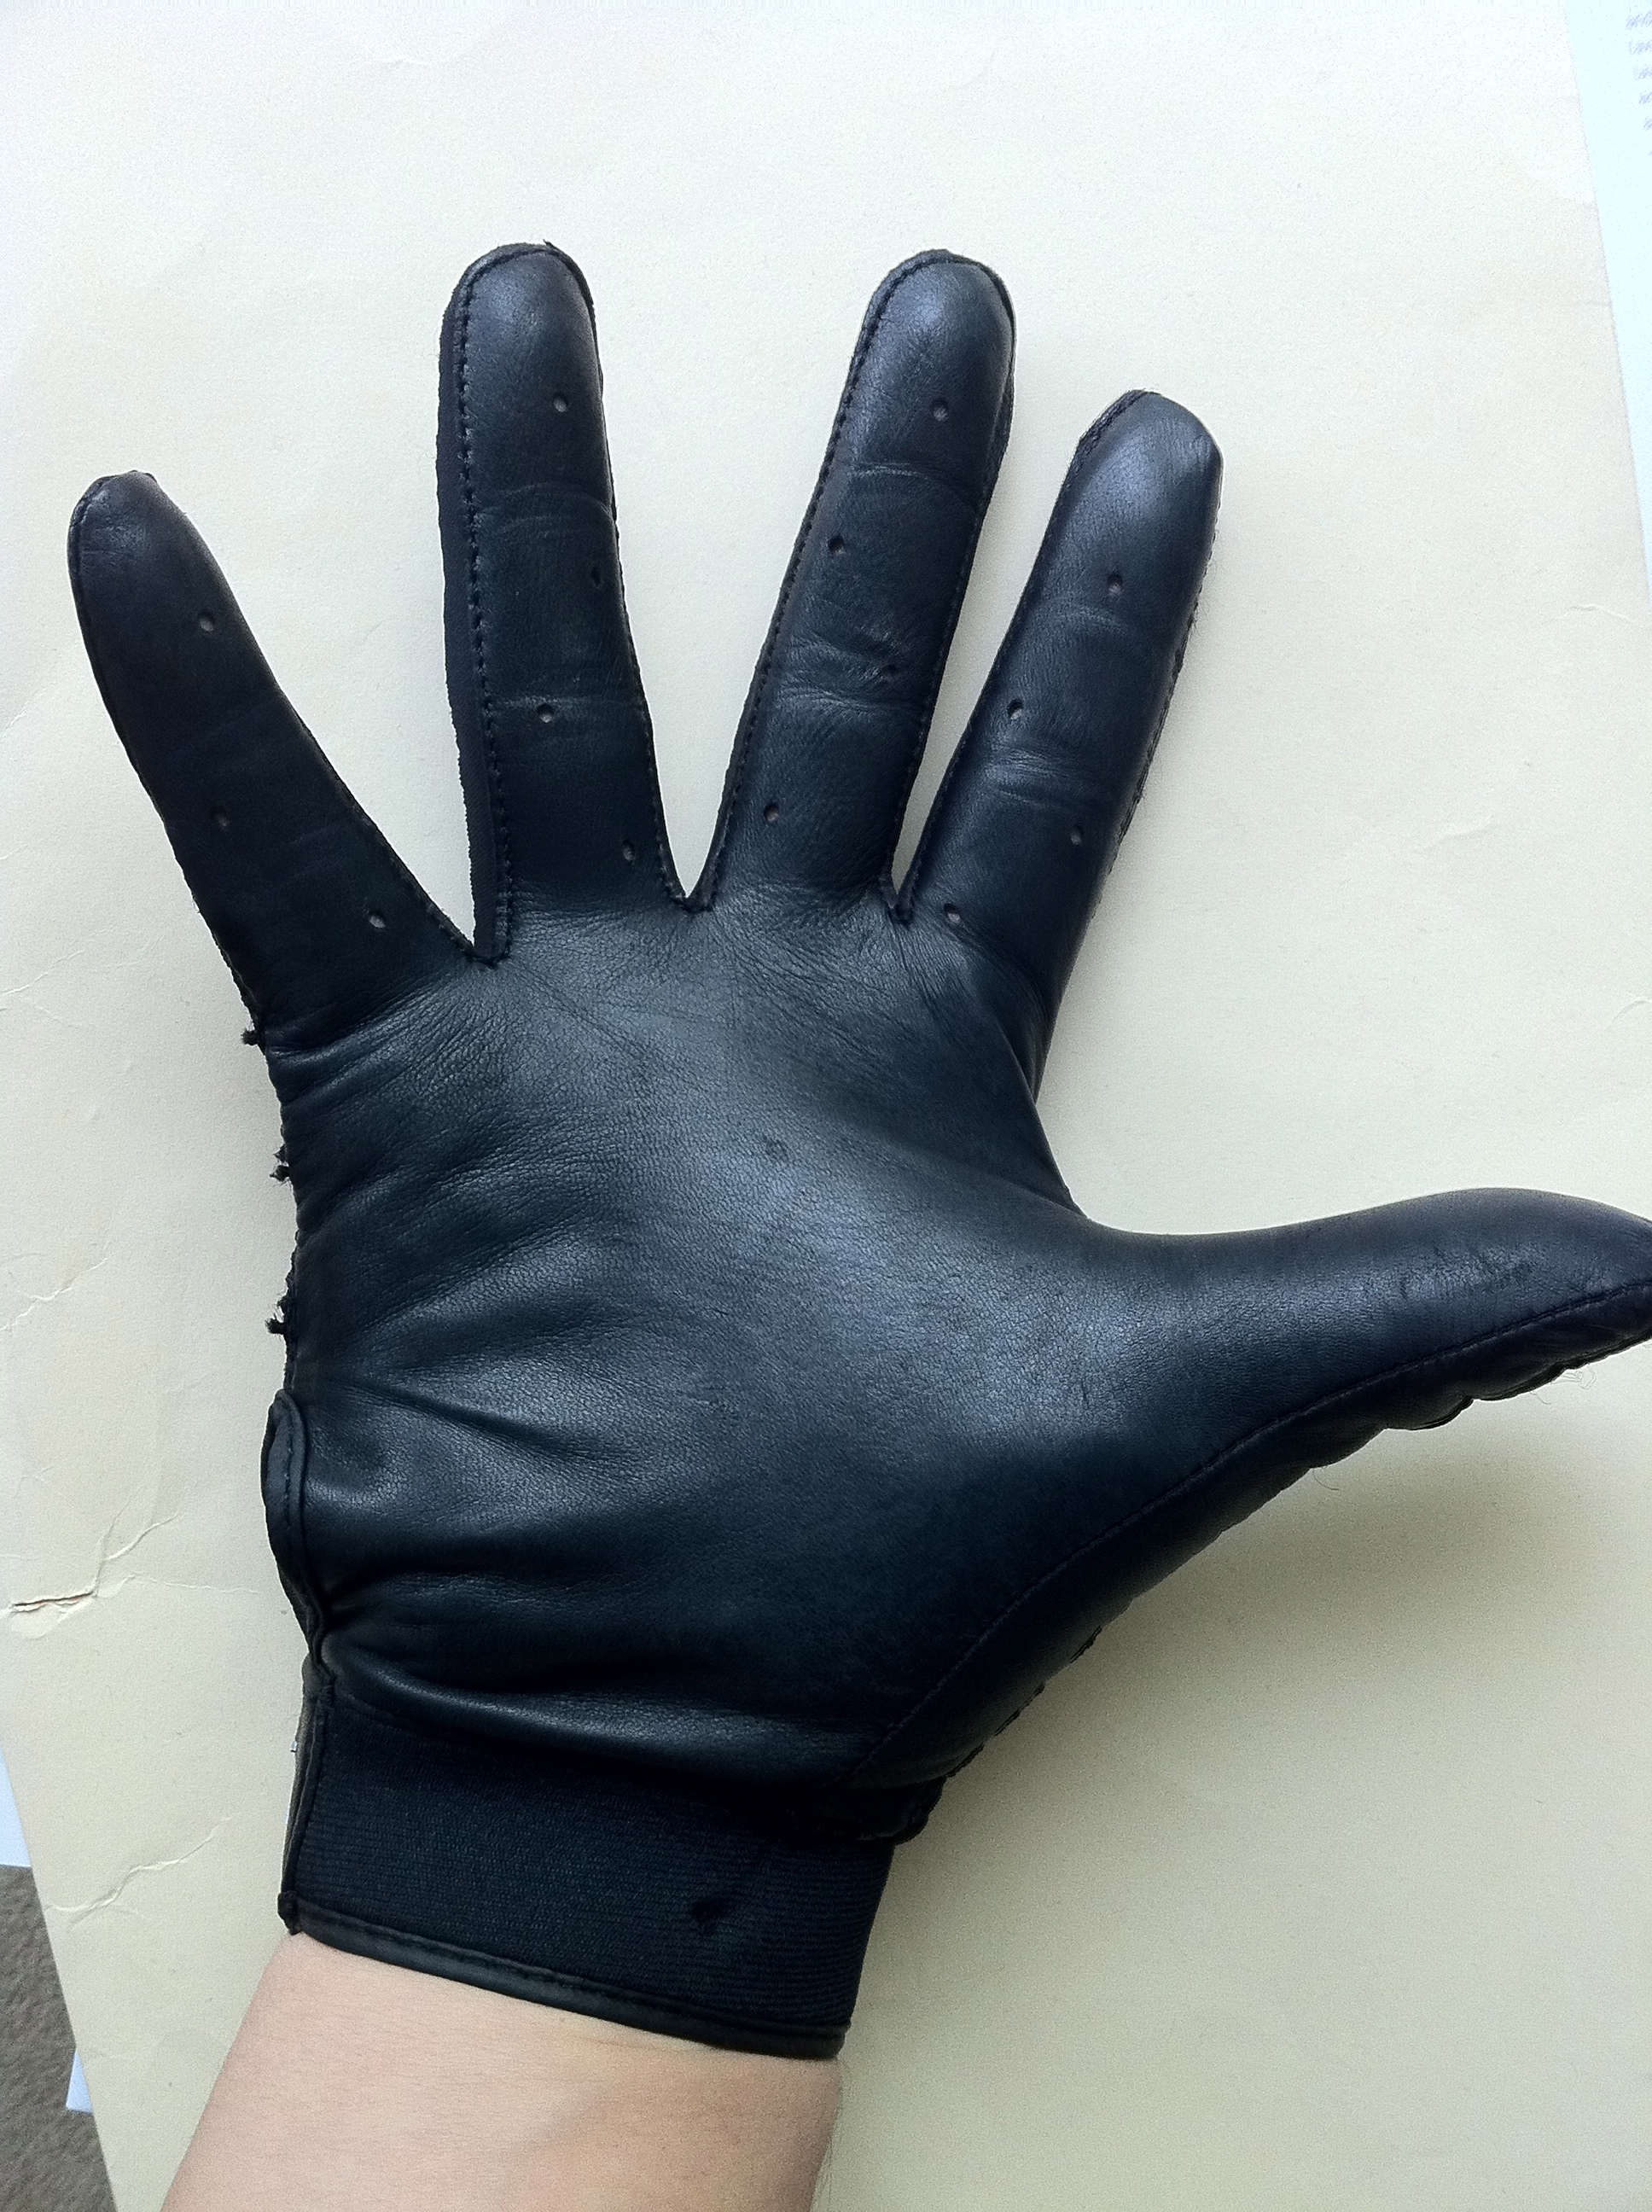 reebok full finger functional gloves